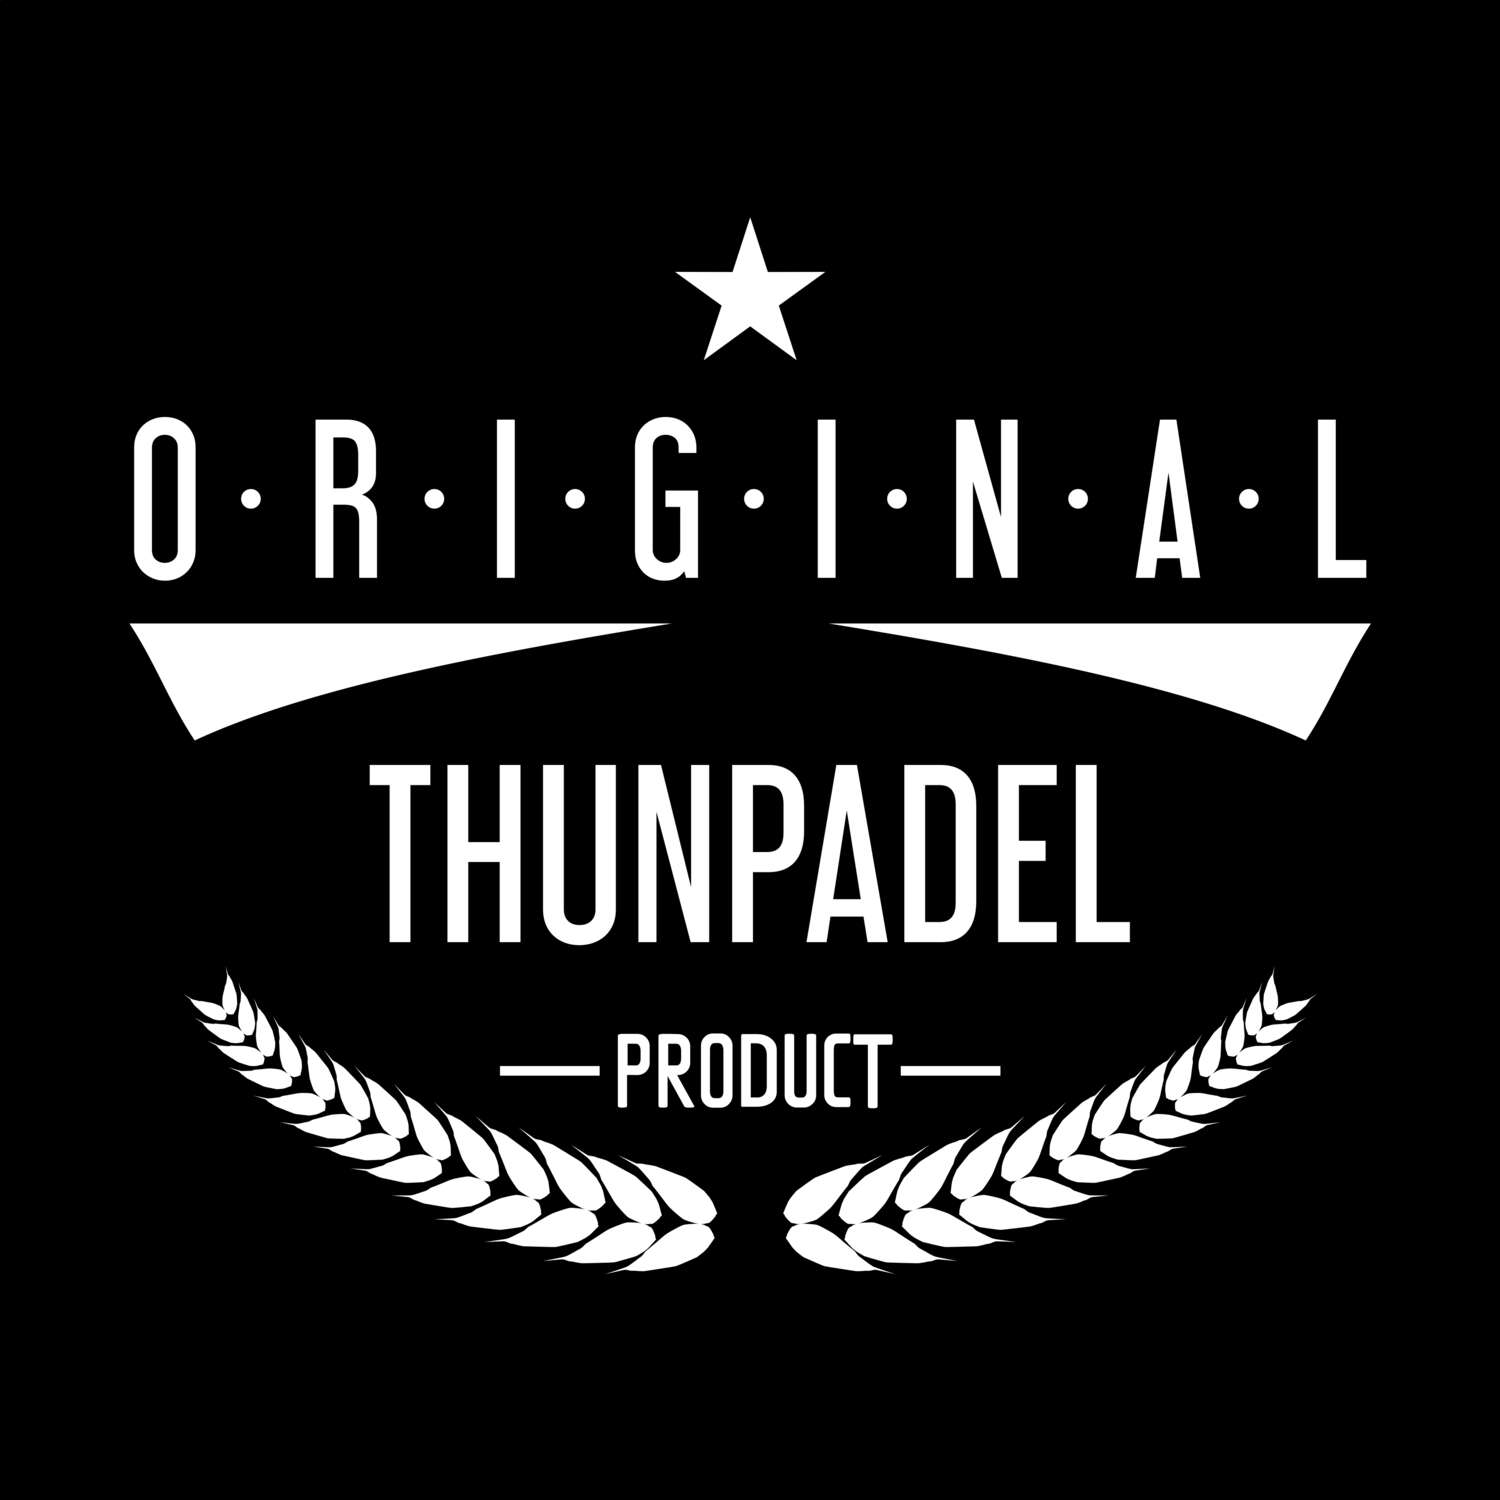 Thunpadel T-Shirt »Original Product«